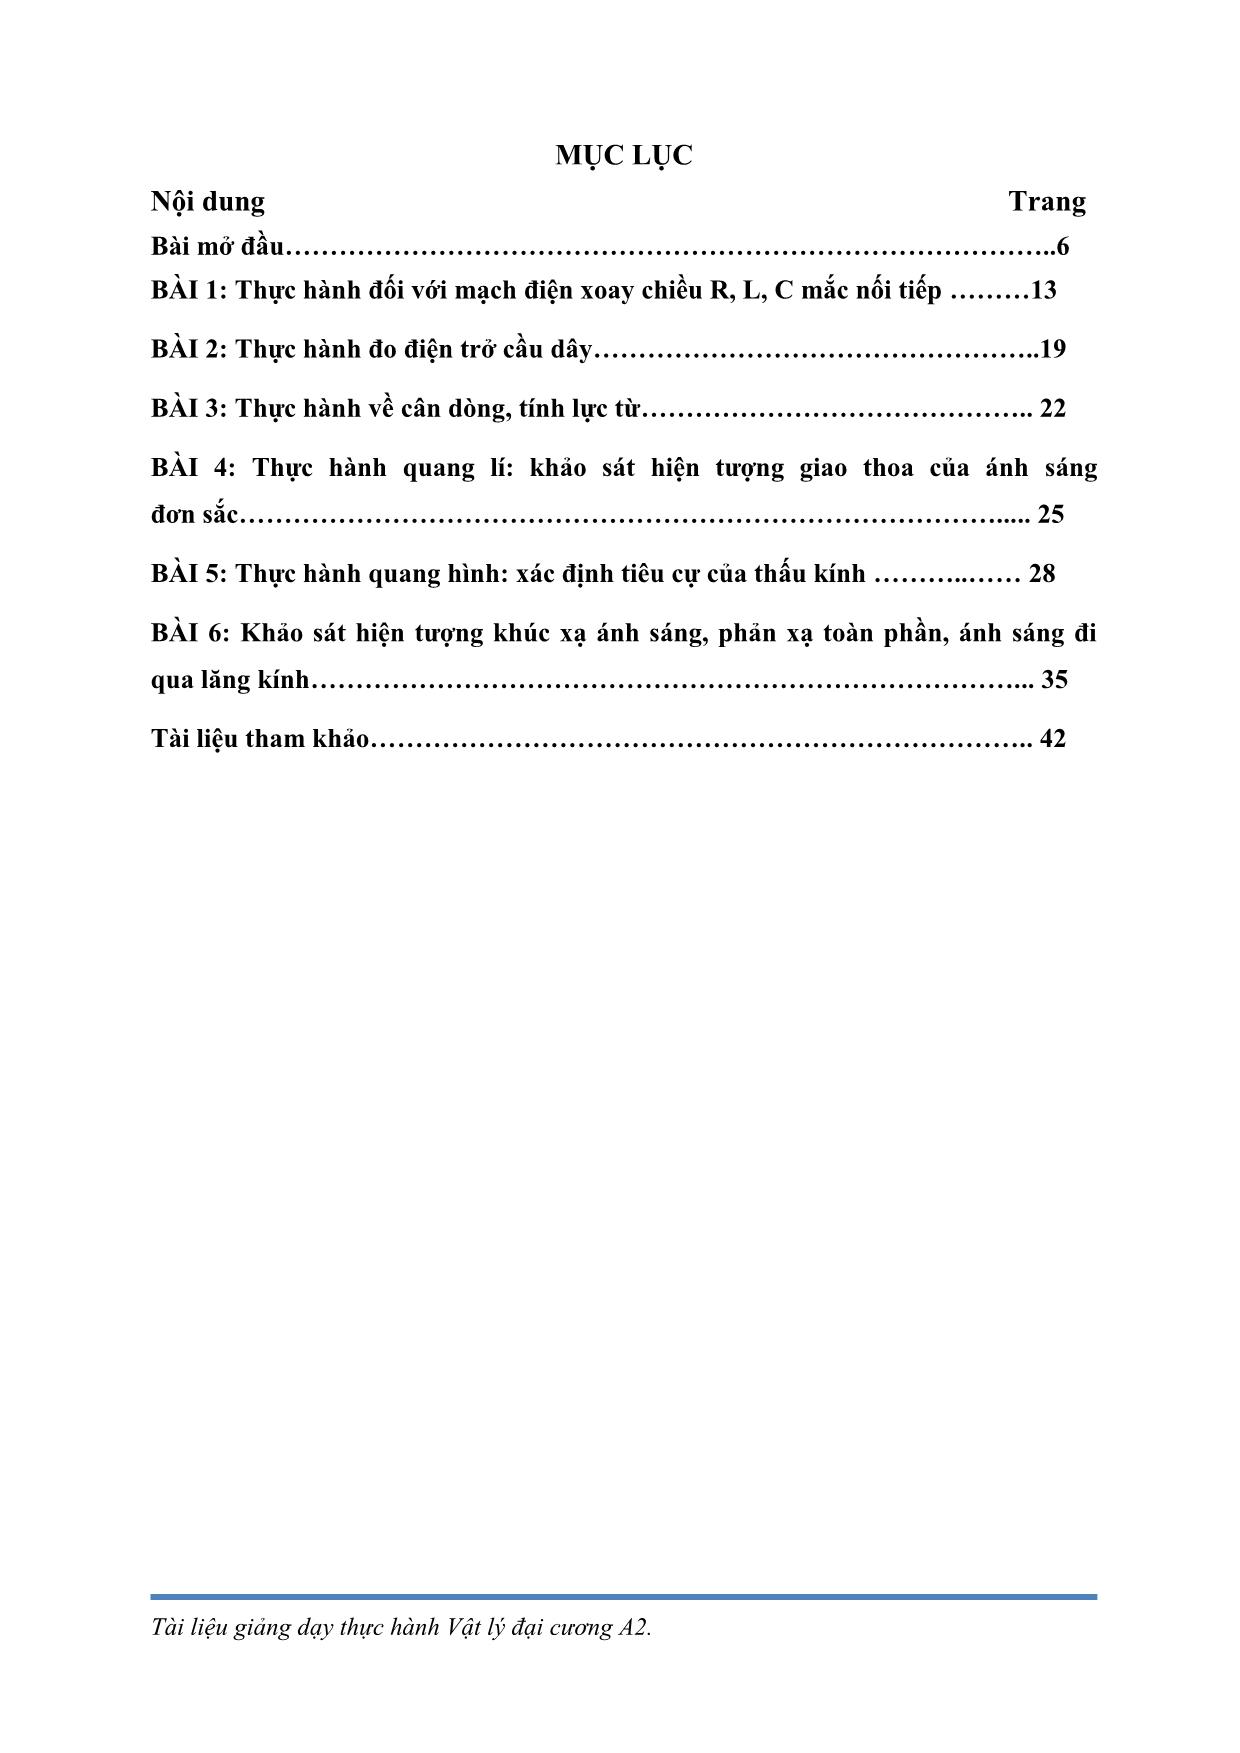 Giáo trình Vật lý đại cương A2 - Nguyễn Văn Sáu trang 3